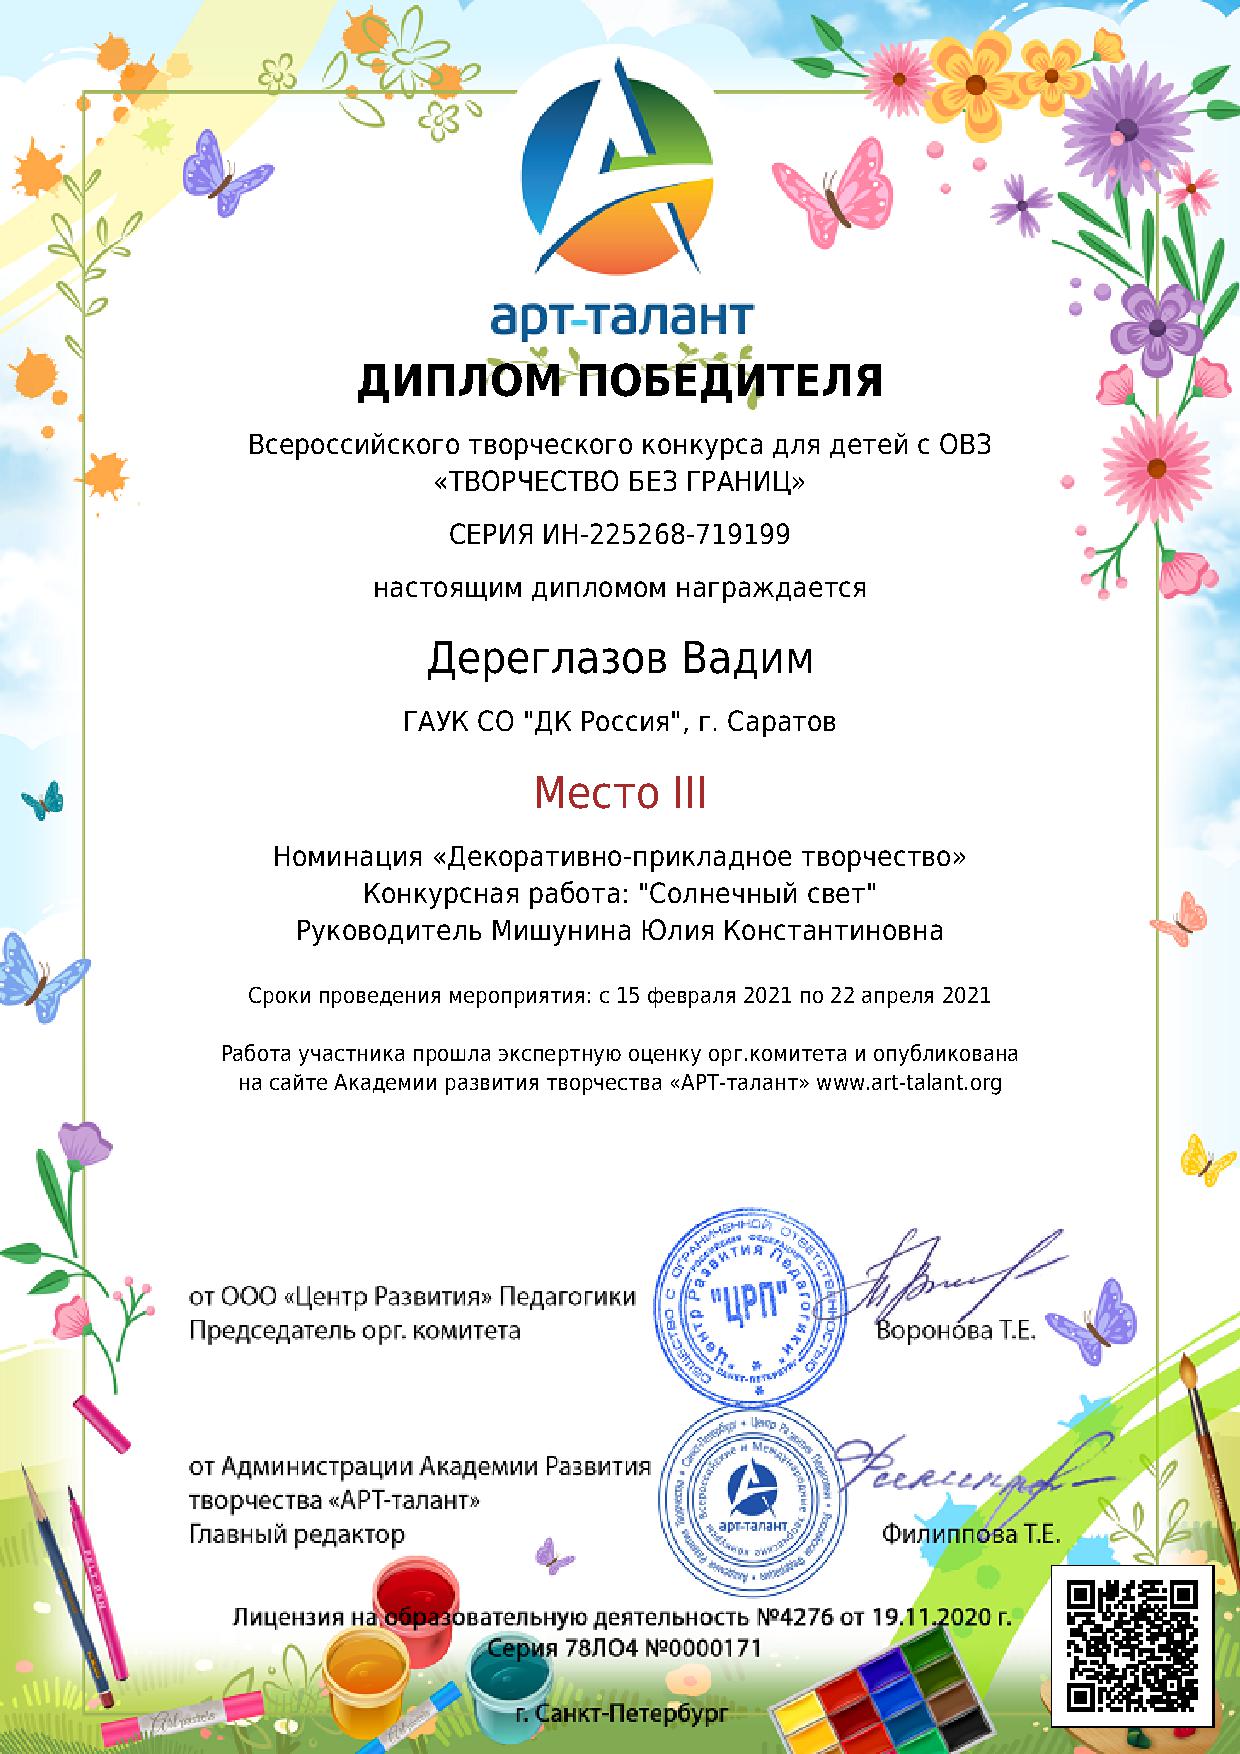 Участник творческого объединения победил во Всероссийском конкурсе для детей с ОВЗ